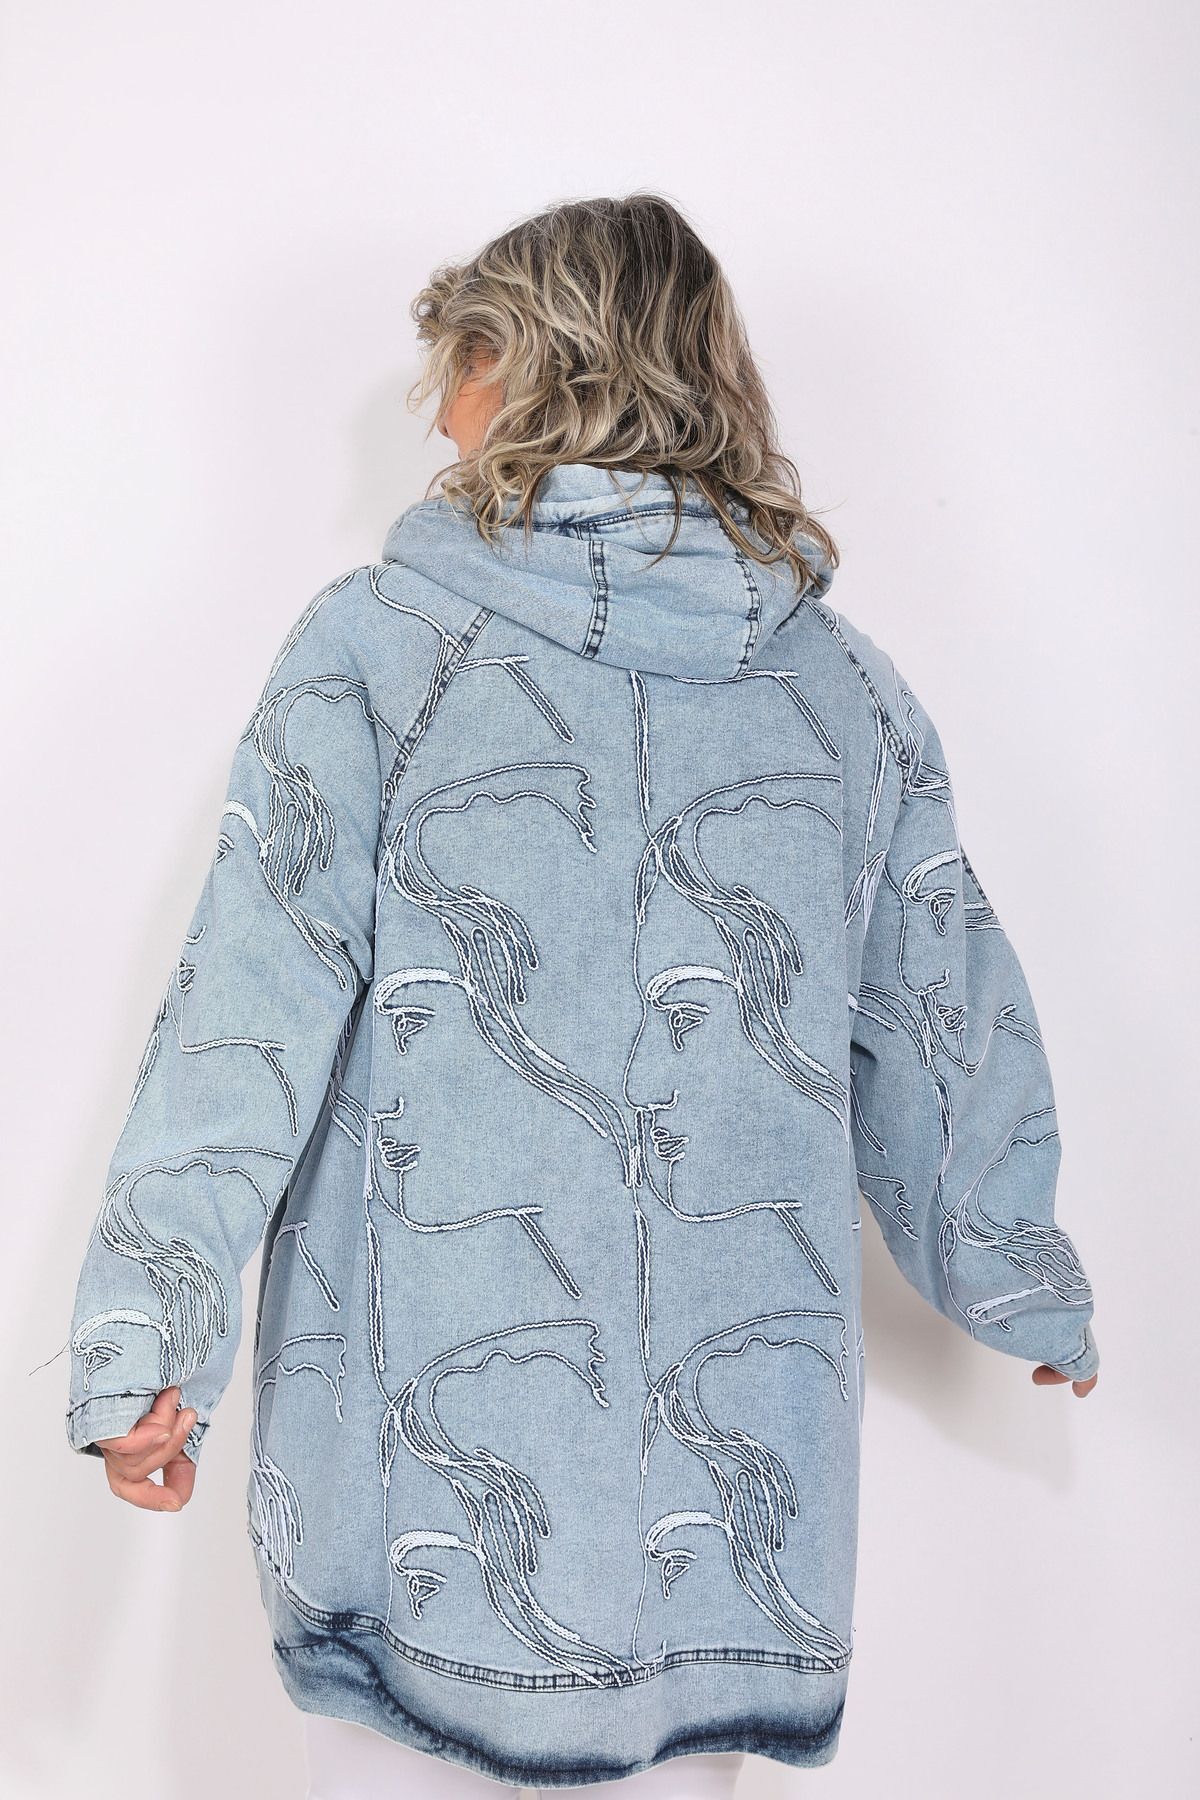 Hitit Butik Çizgisel Tasarımlı Mavi Denim Kot Ceket